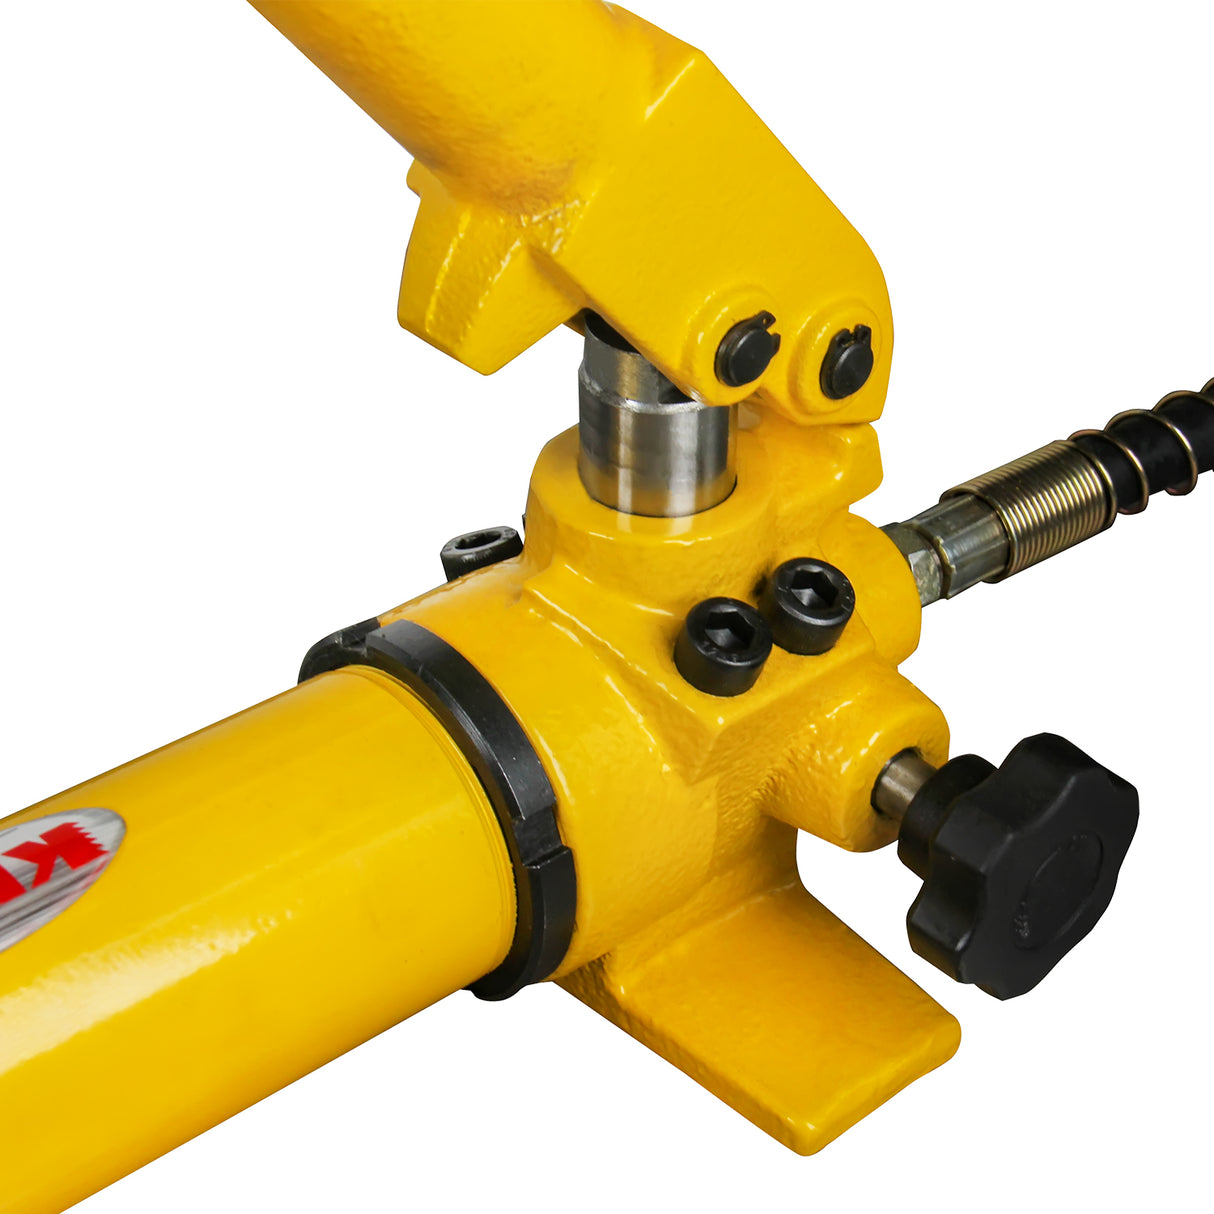 Kaka industrial Hydraulic Hand Pump CP-700 10000 psi Hydraulic Hand Pu